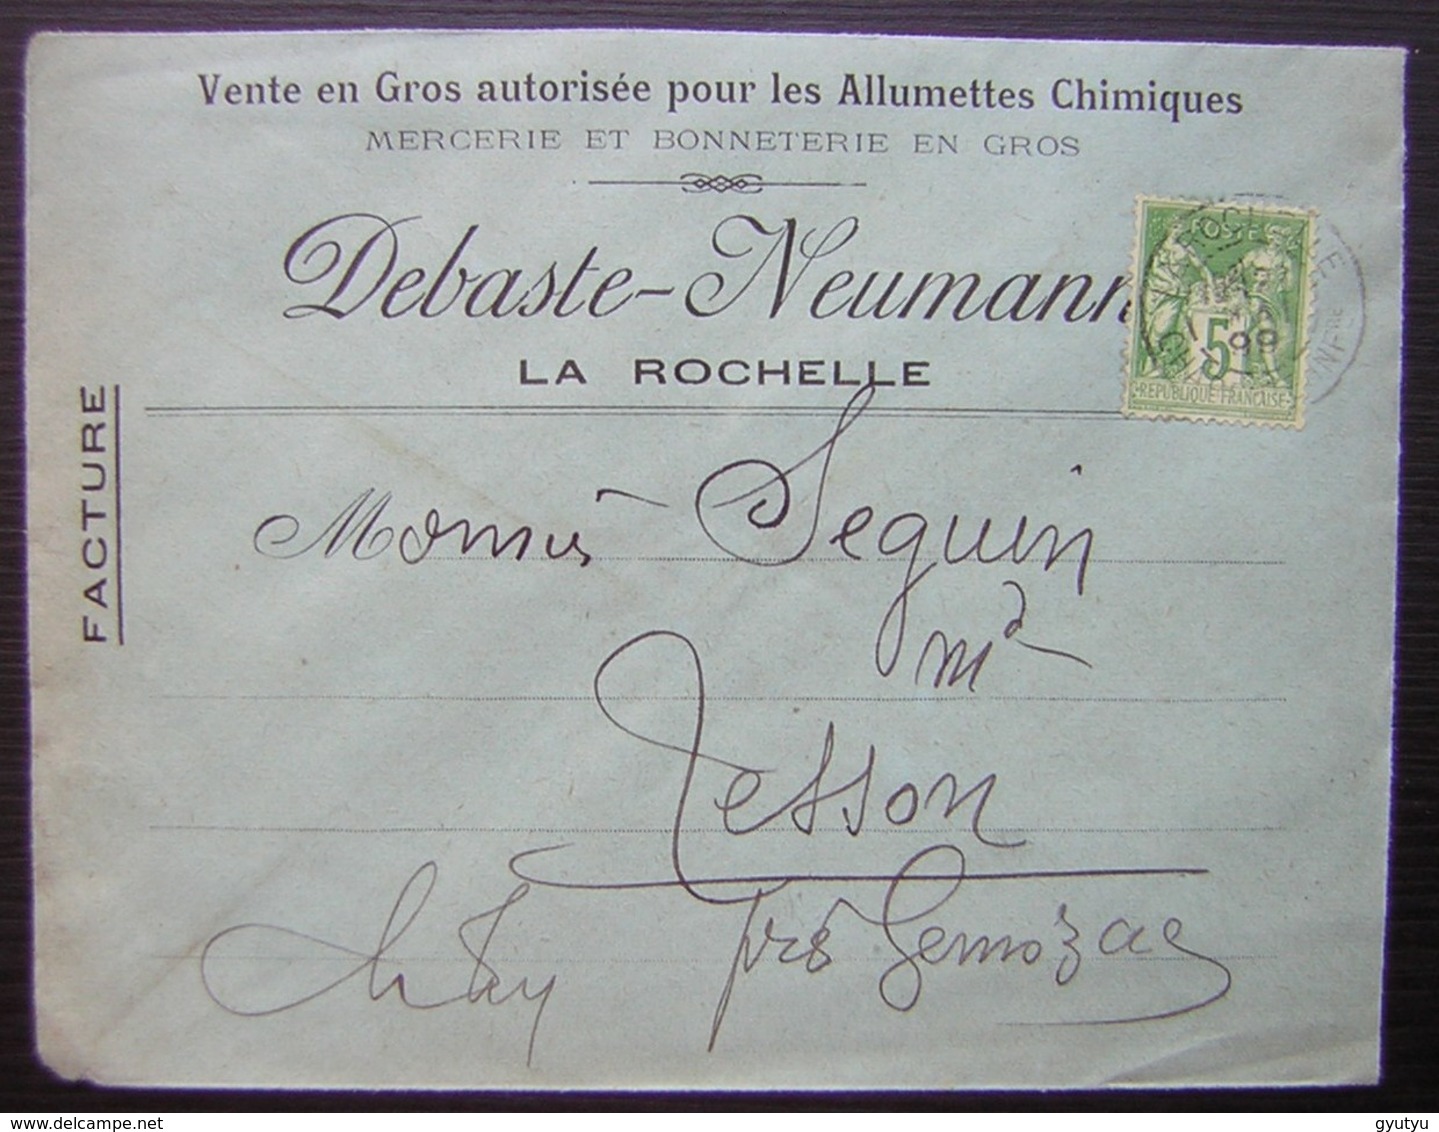 La Rochelle (Charente Inférieure) 1899 Debaste Neumann Mercerie Bonneterie Allumettes Chimiques Pour Tesson Par Gémozac - 1877-1920: Période Semi Moderne